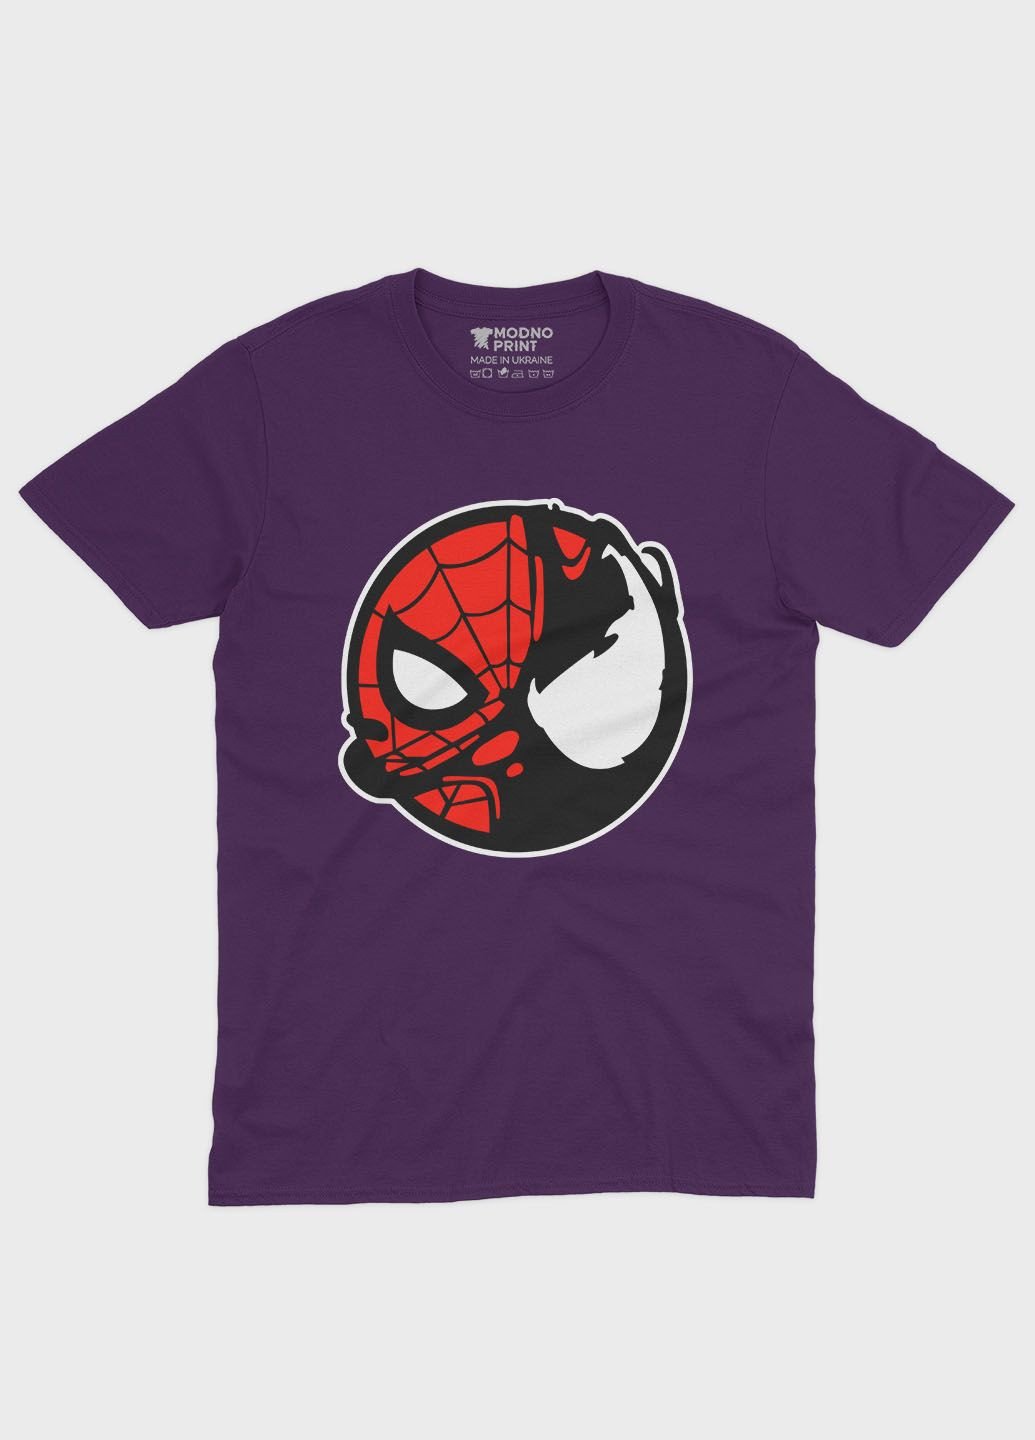 Фиолетовая демисезонная футболка для девочки с принтом супергероя - человек-паук (ts001-1-dby-006-014-100-g) Modno